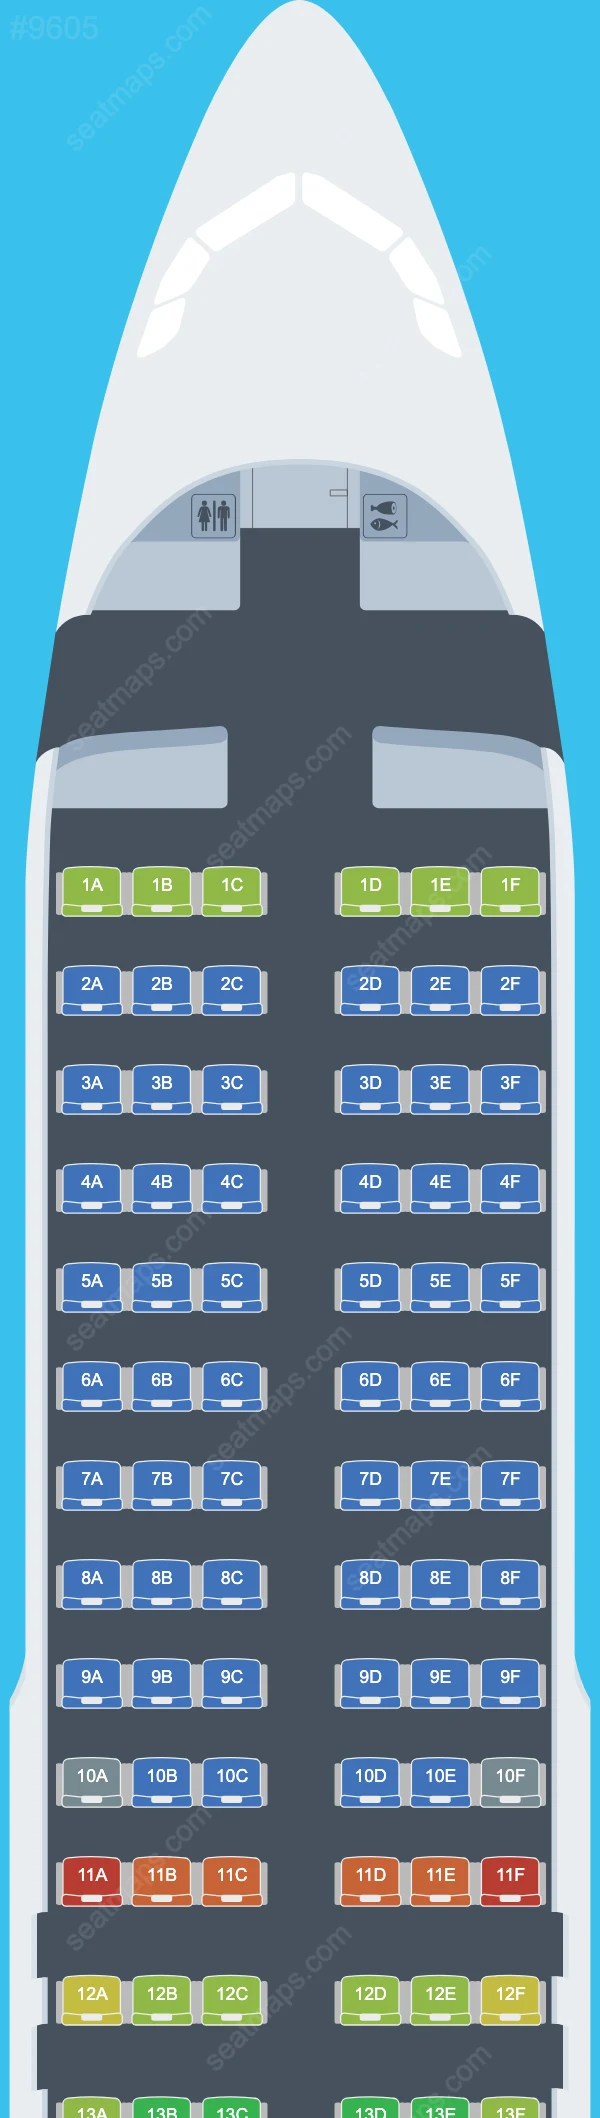 Air Malta Airbus A320 Seat Maps A320-200 V.1